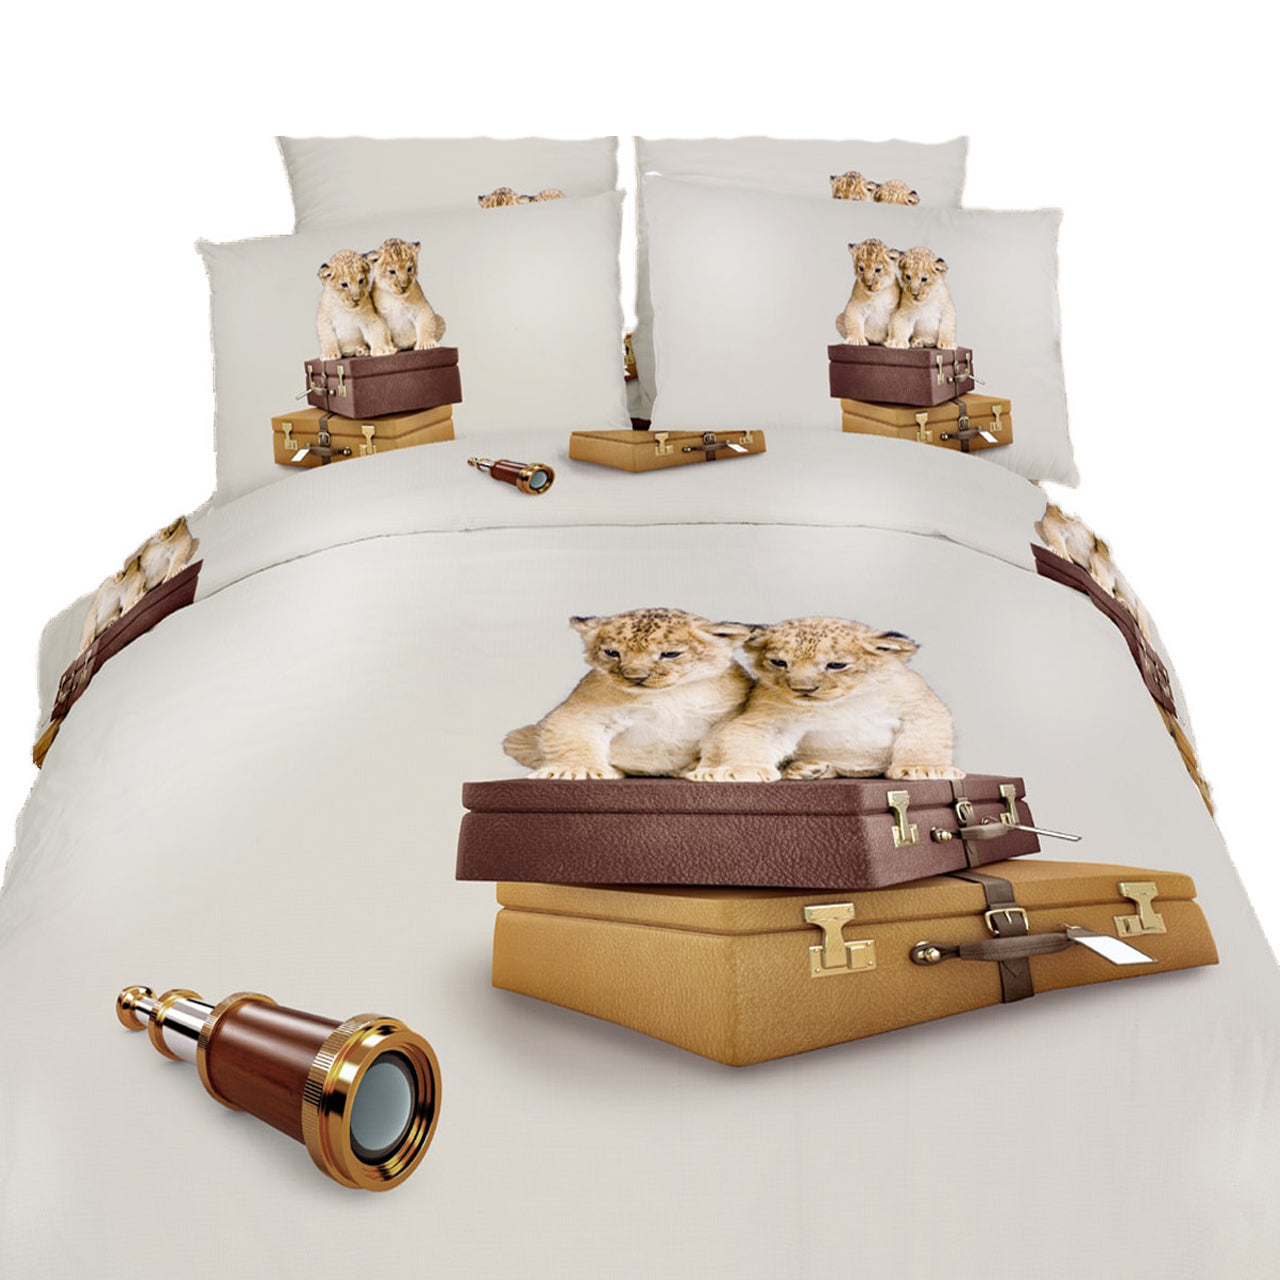 Duvet Cover Set Luxury Twin Bedding Dolce Mela Dm484t Home